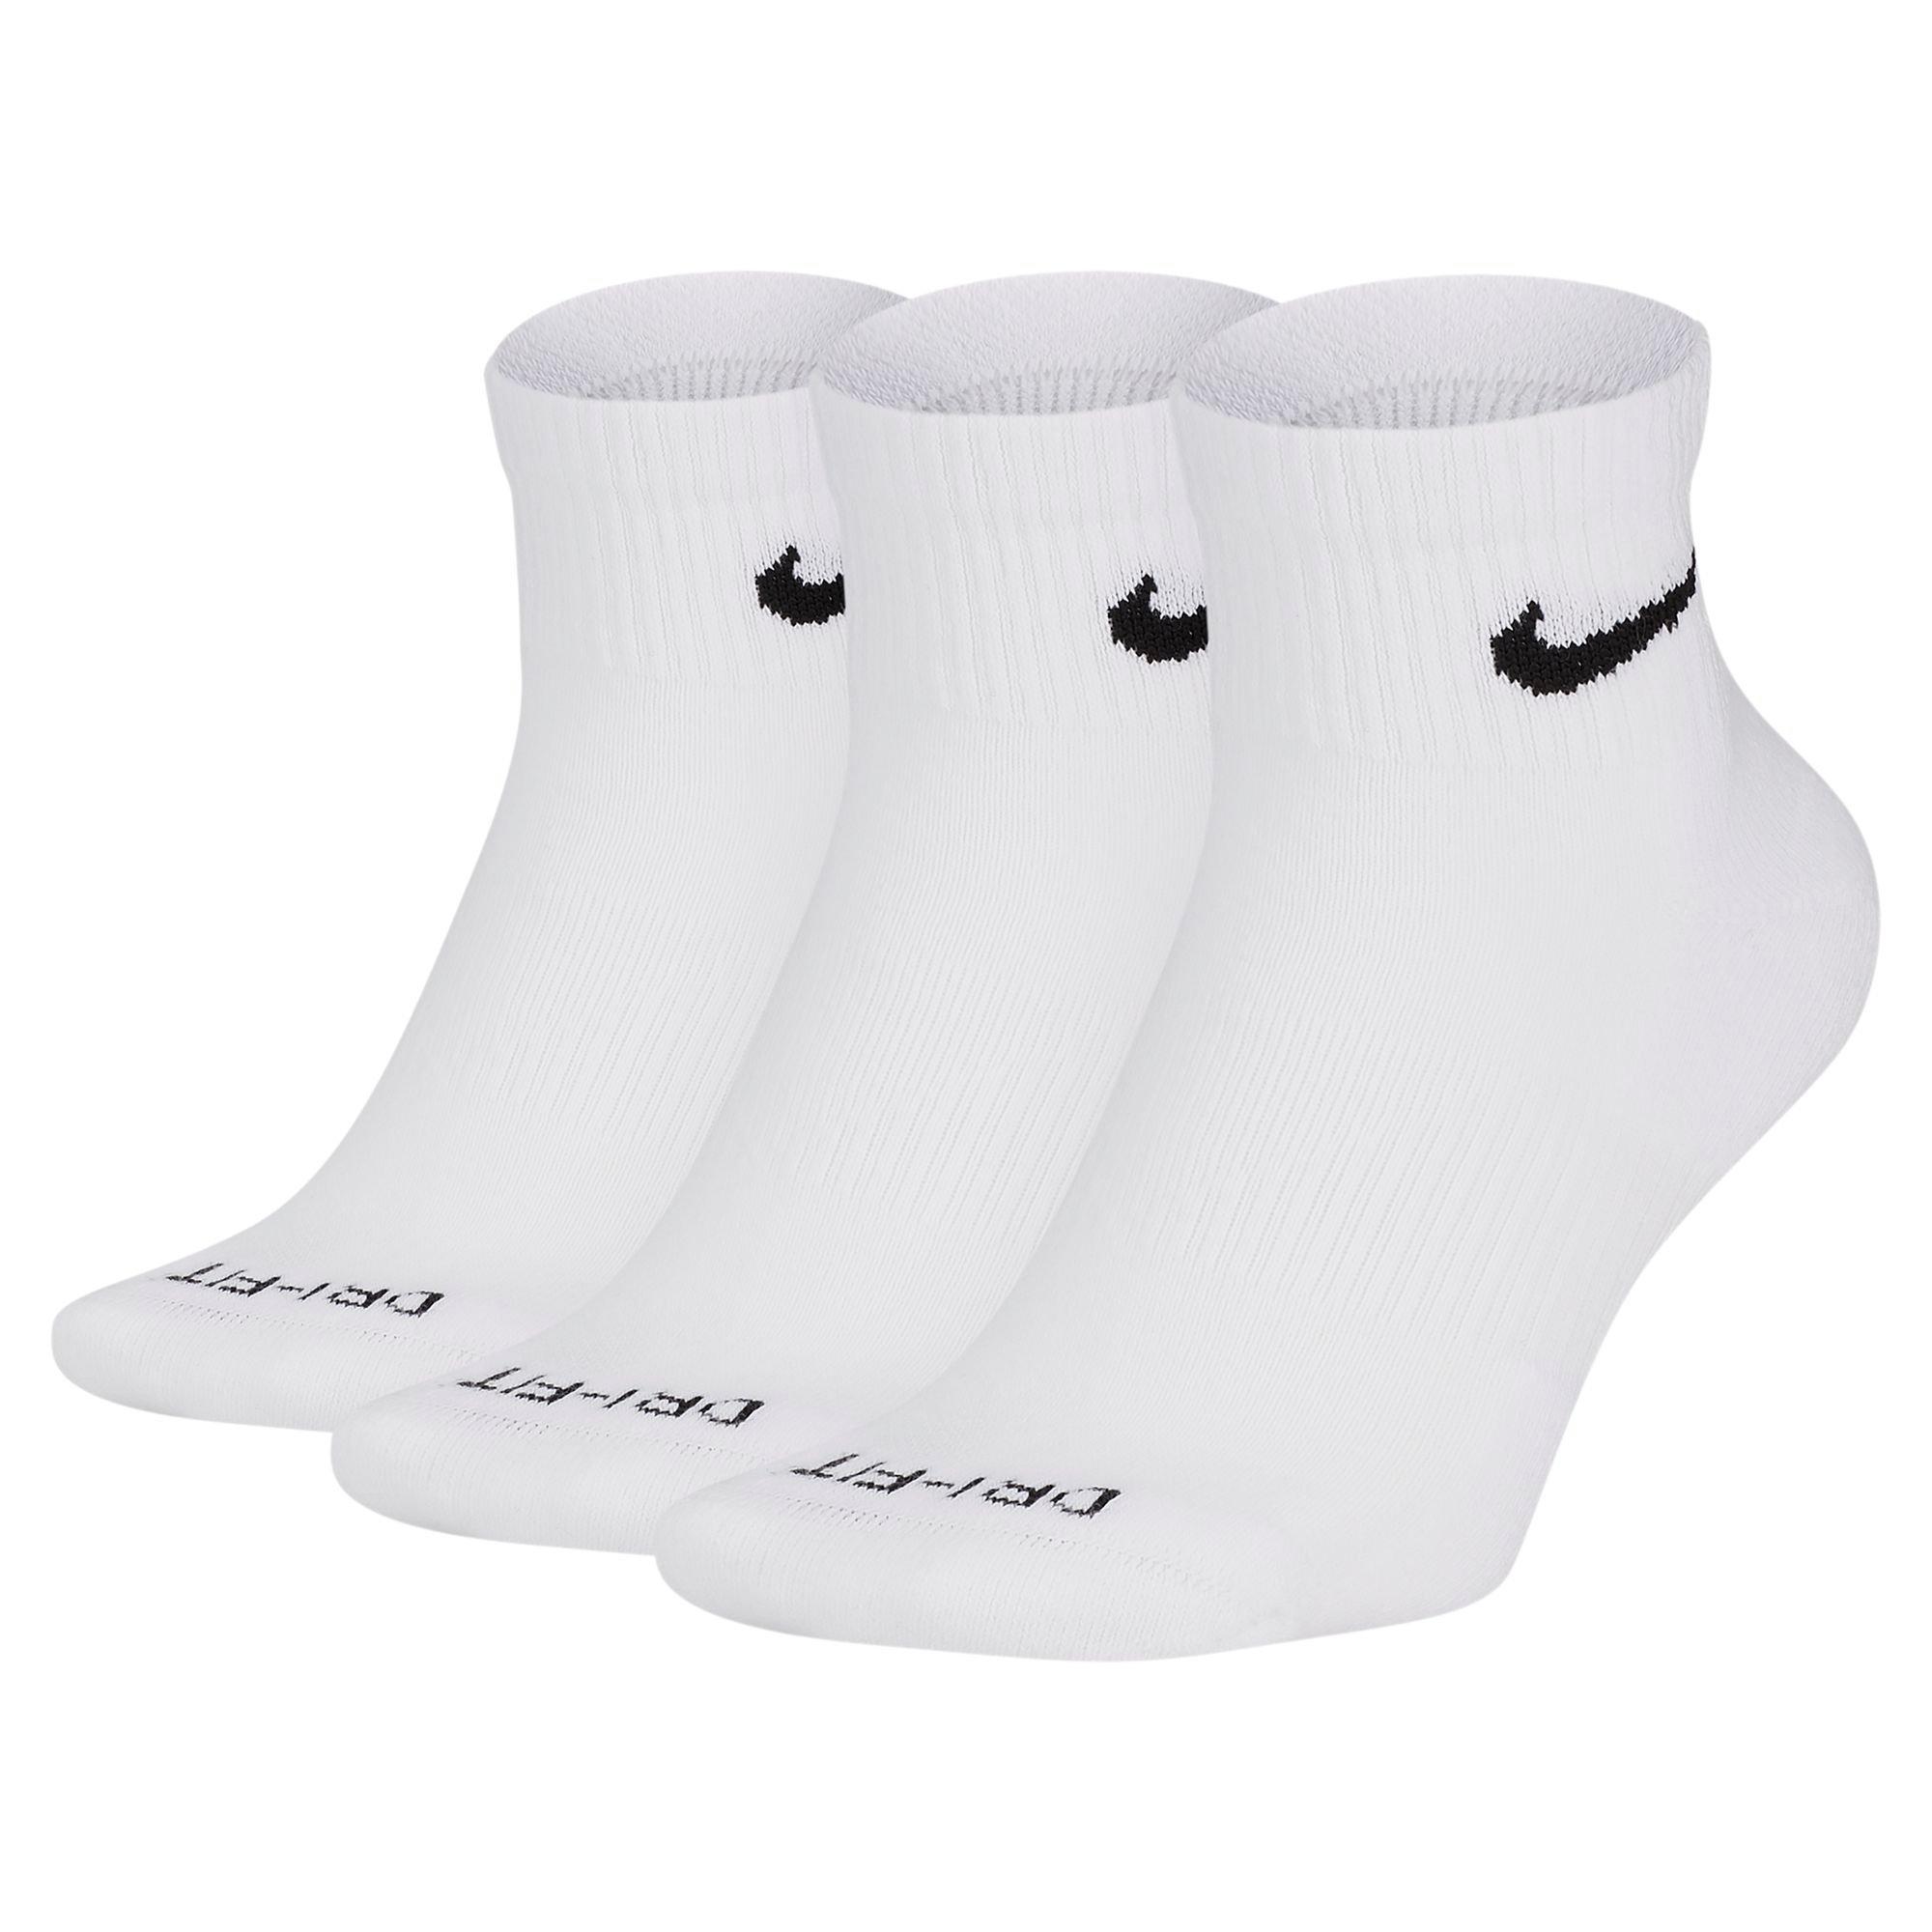 ankle high white nike socks